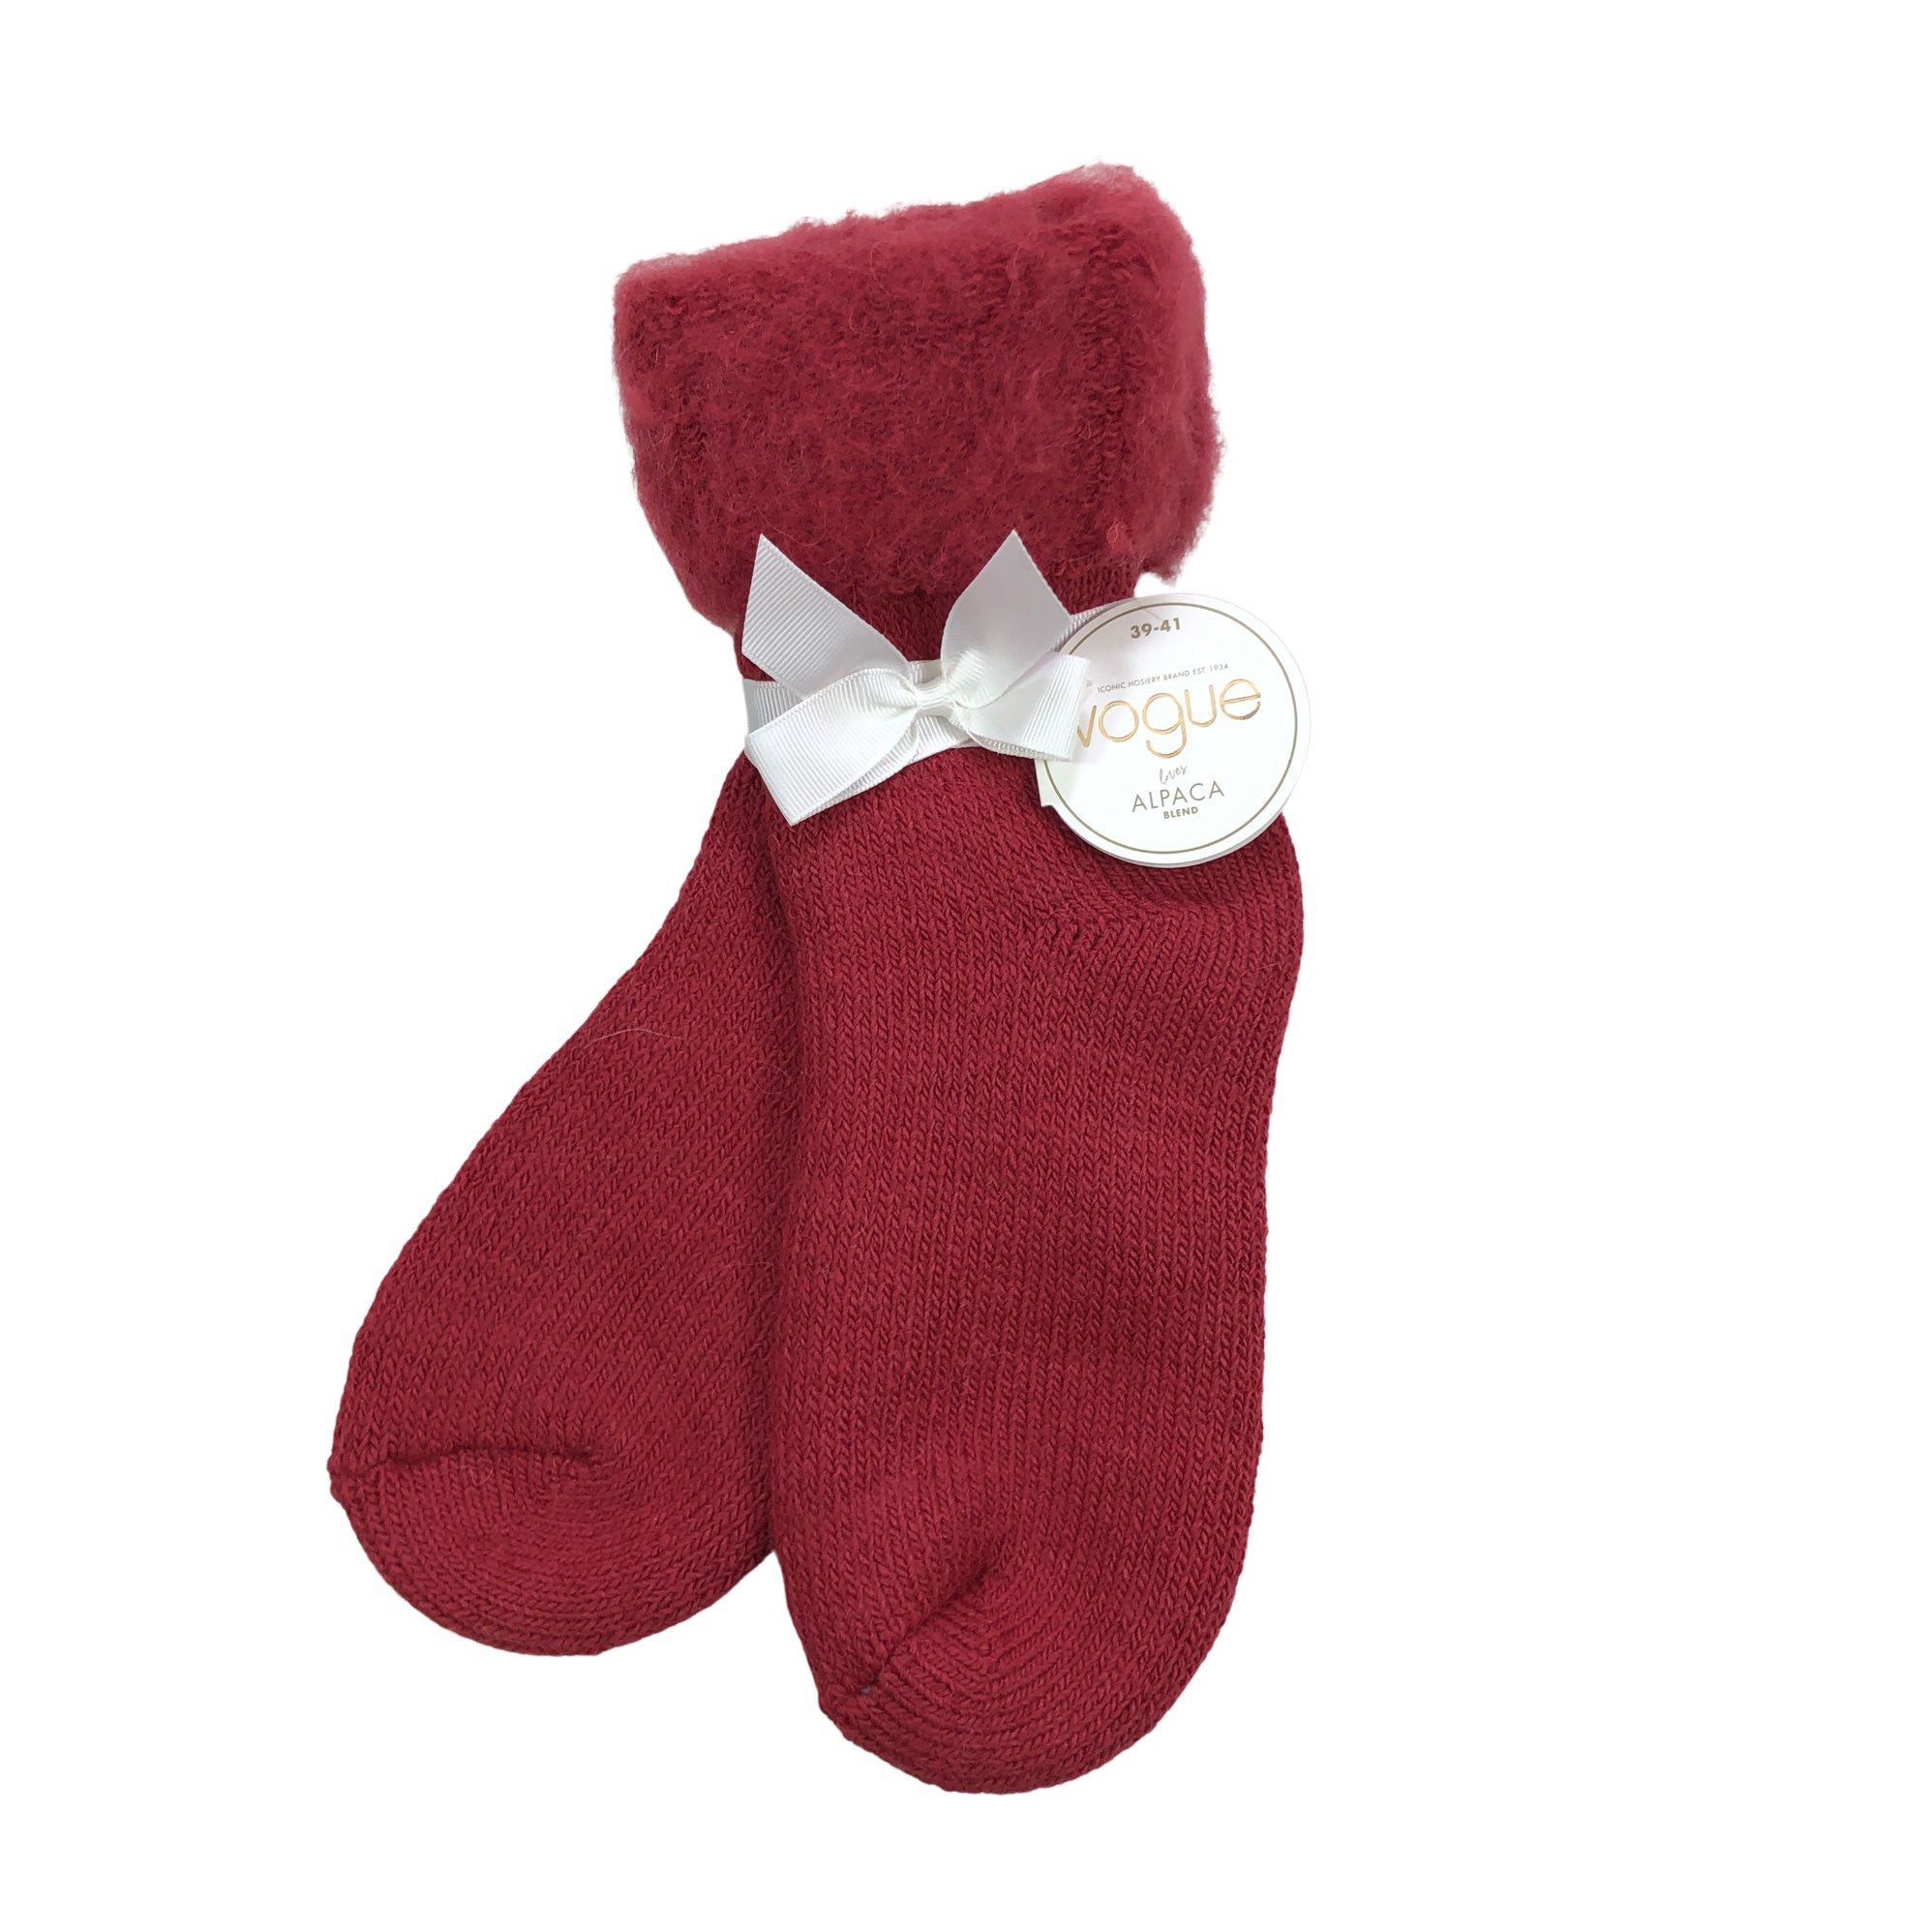 Women's Vogue Wool socks, size 40 (Red)